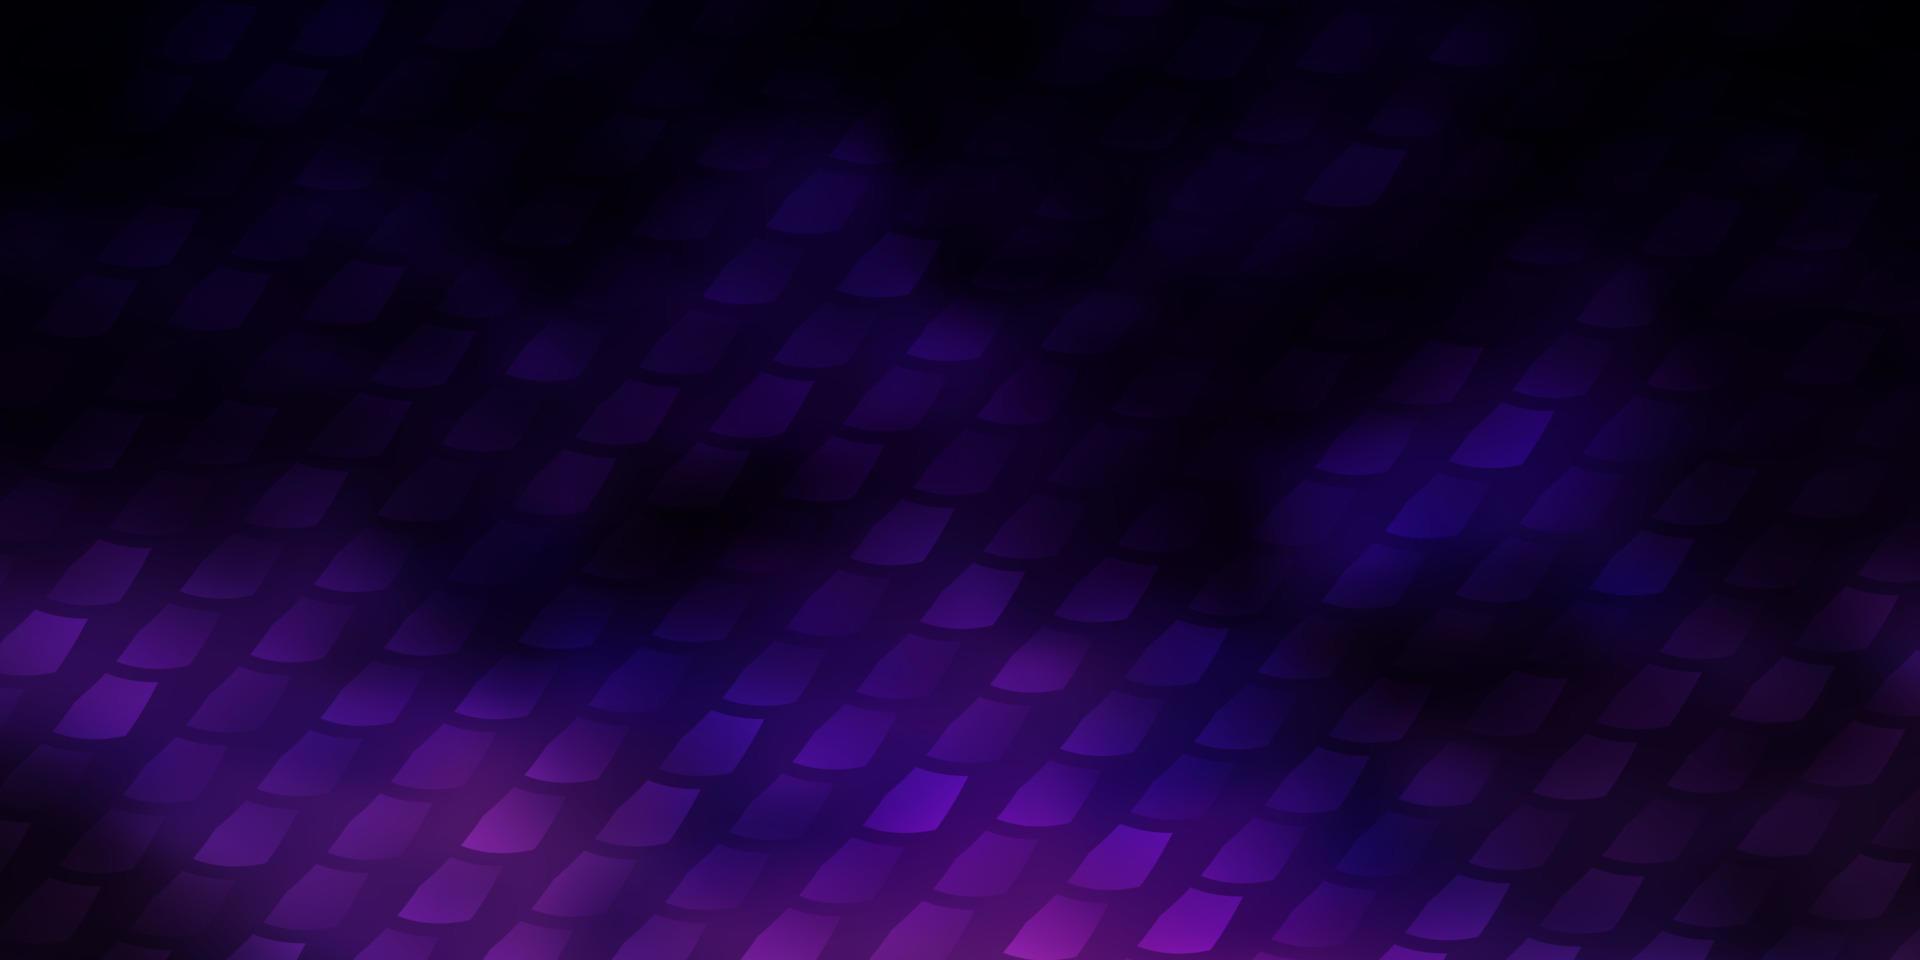 sfondo vettoriale viola scuro con rettangoli.